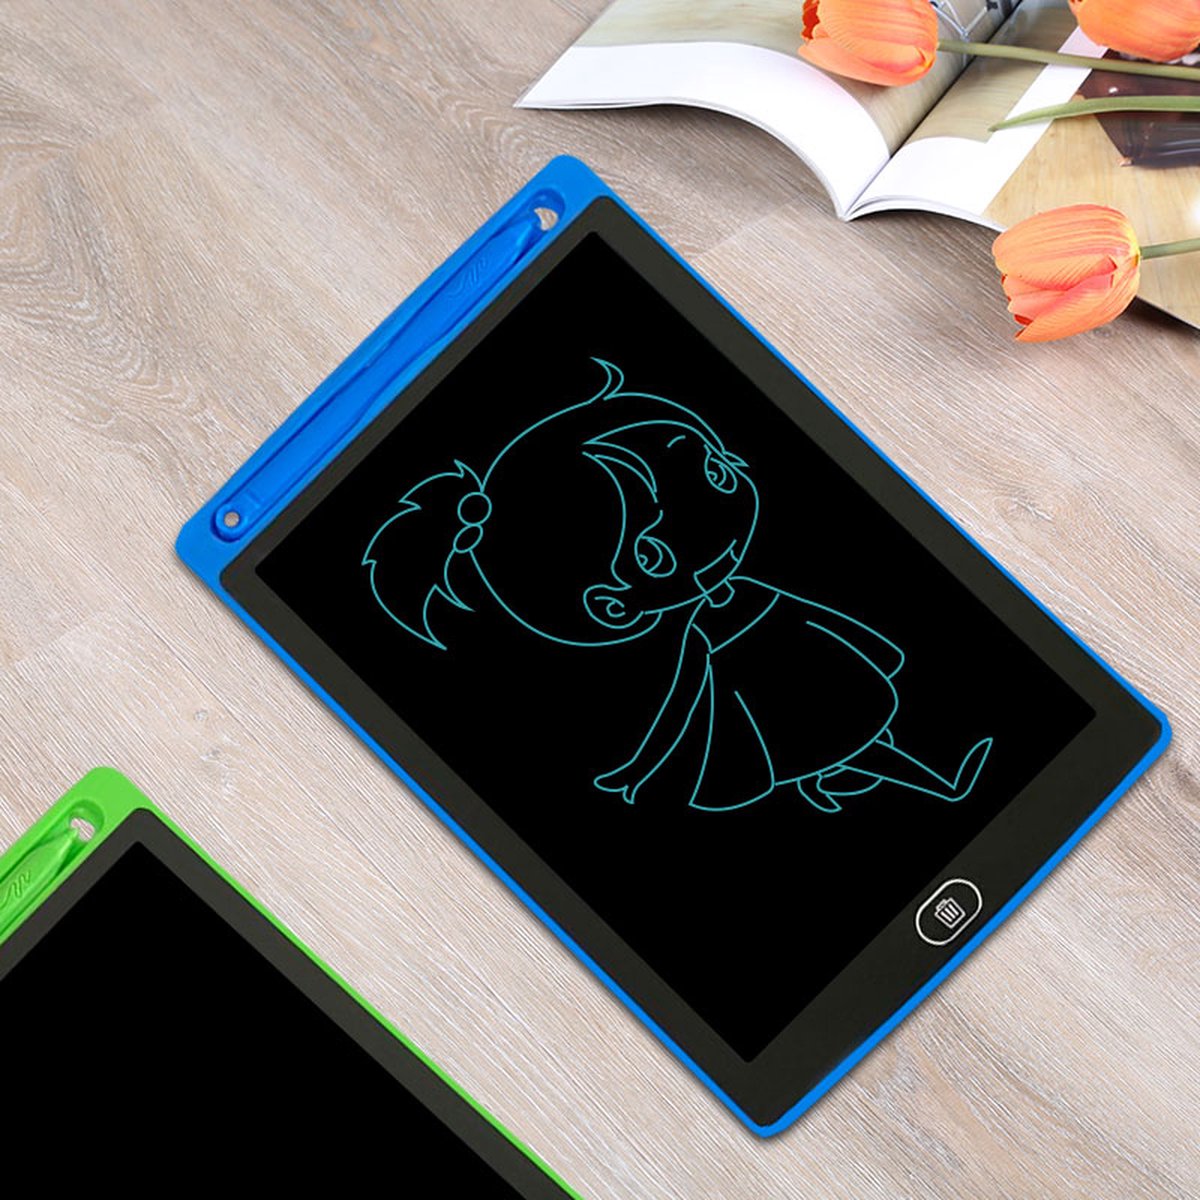 LCD-tekentablet voor kinderen "Blauw" 8,5 inch kleurenscherm - Sinterklaas - Kerstcadeaus - Cadeau - Sinterklaascadeau - Kerstcadeau - Sint - Kerstmis - Kerstcadeau - Tekentablet - Tekentabletten - Tablets - Speelgoed voor jongens en Meisjes